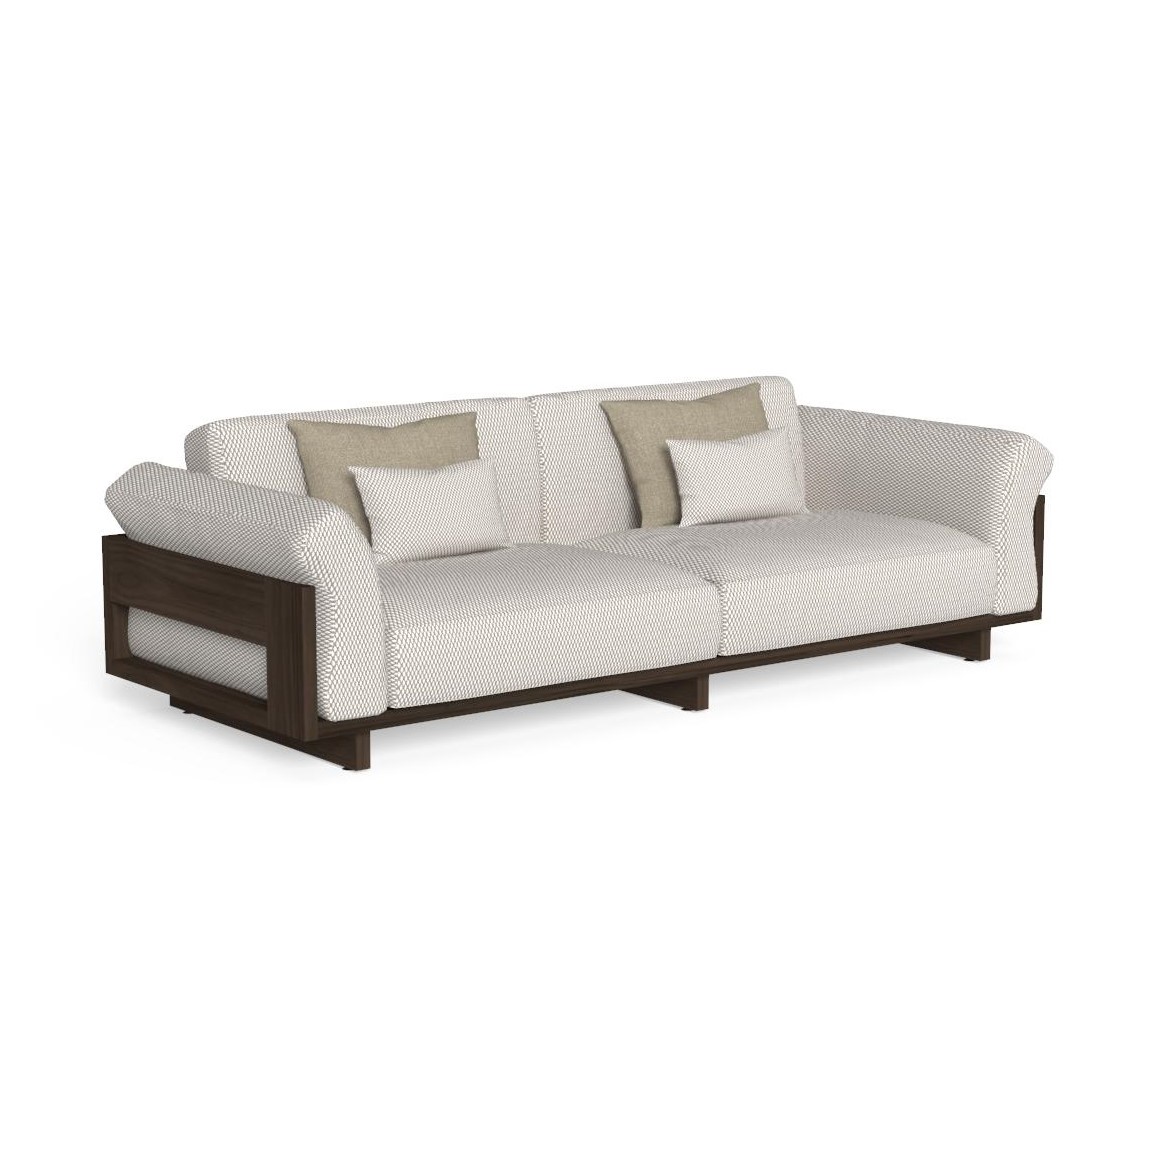 Argo 3 Seater Wood Sofa